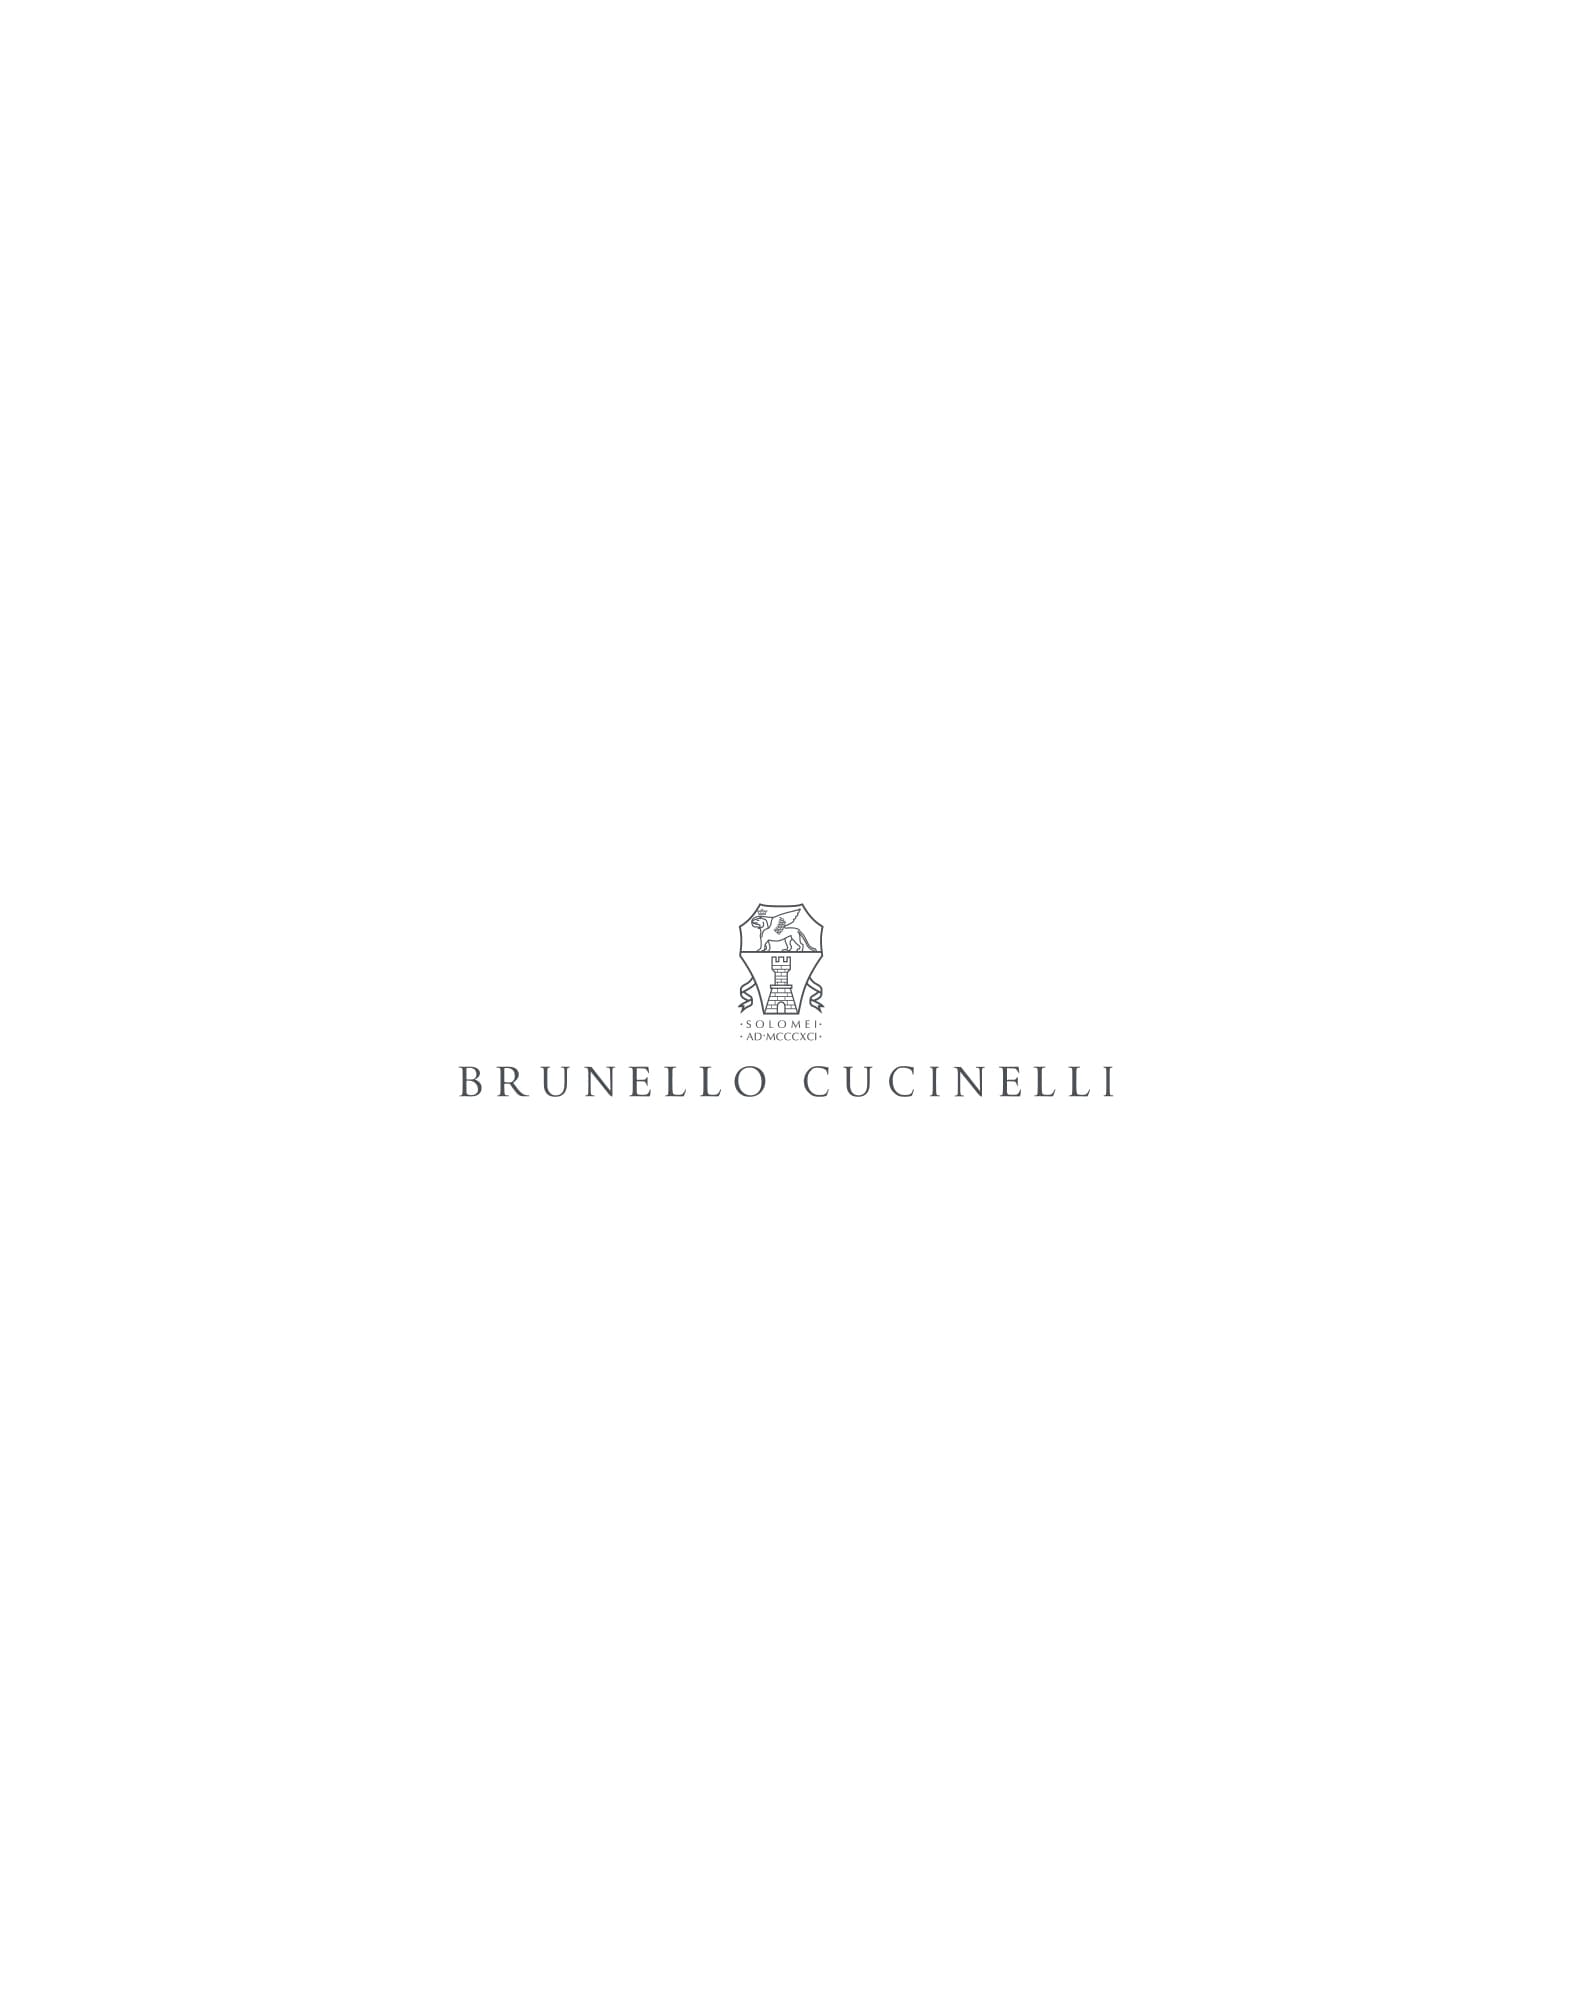 Джемпер, связанный английской резинкой Верблюжий Мальчики - Brunello Cucinelli 